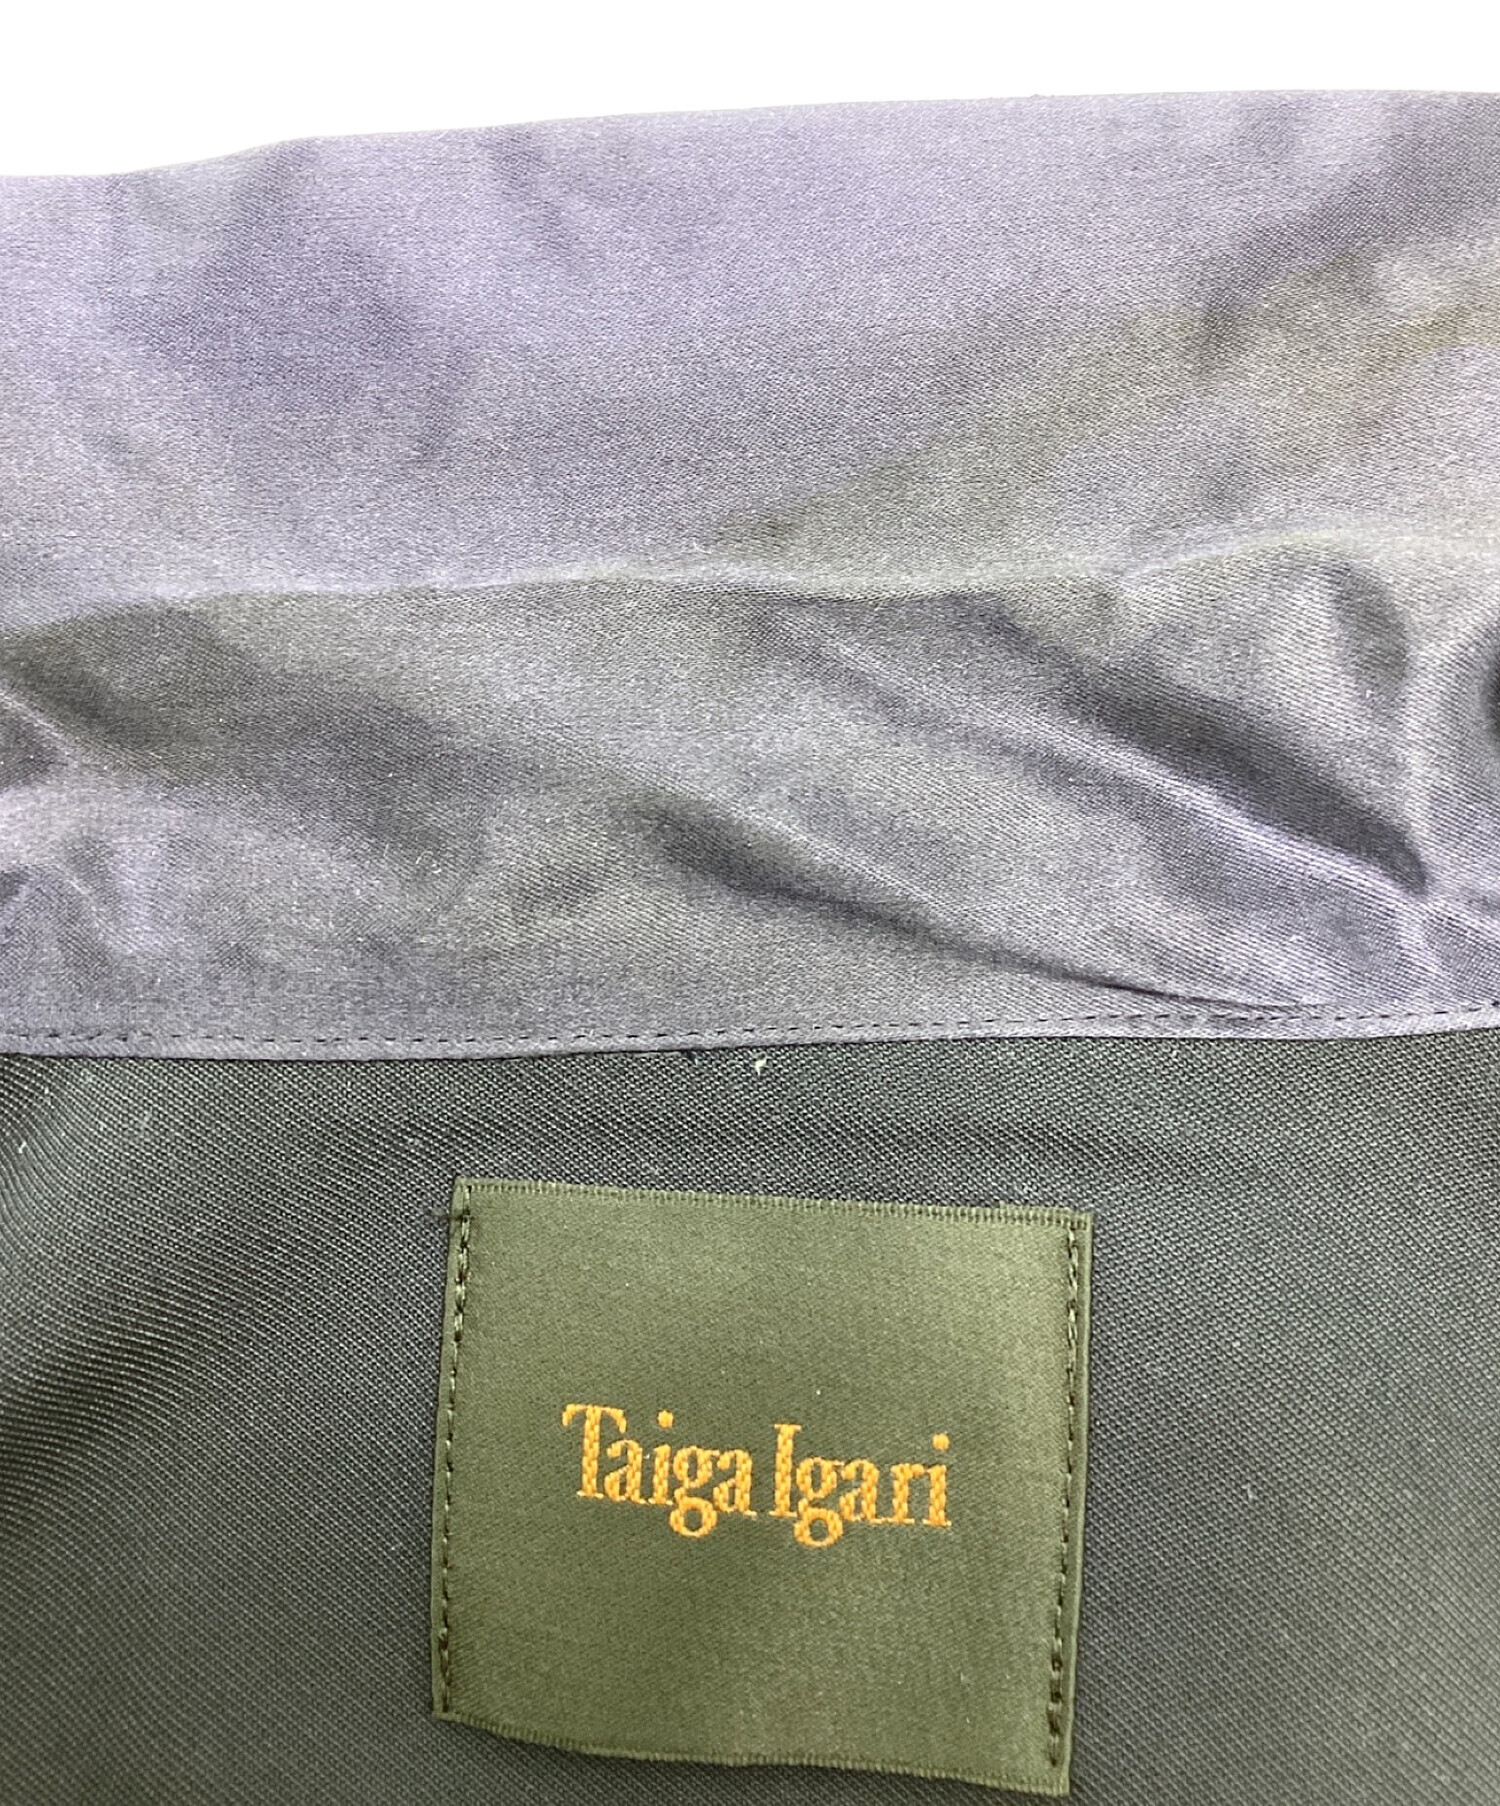 taiga igari (タイガイガリ) レーヨンオープンカラーシャツ ネイビー サイズ:S